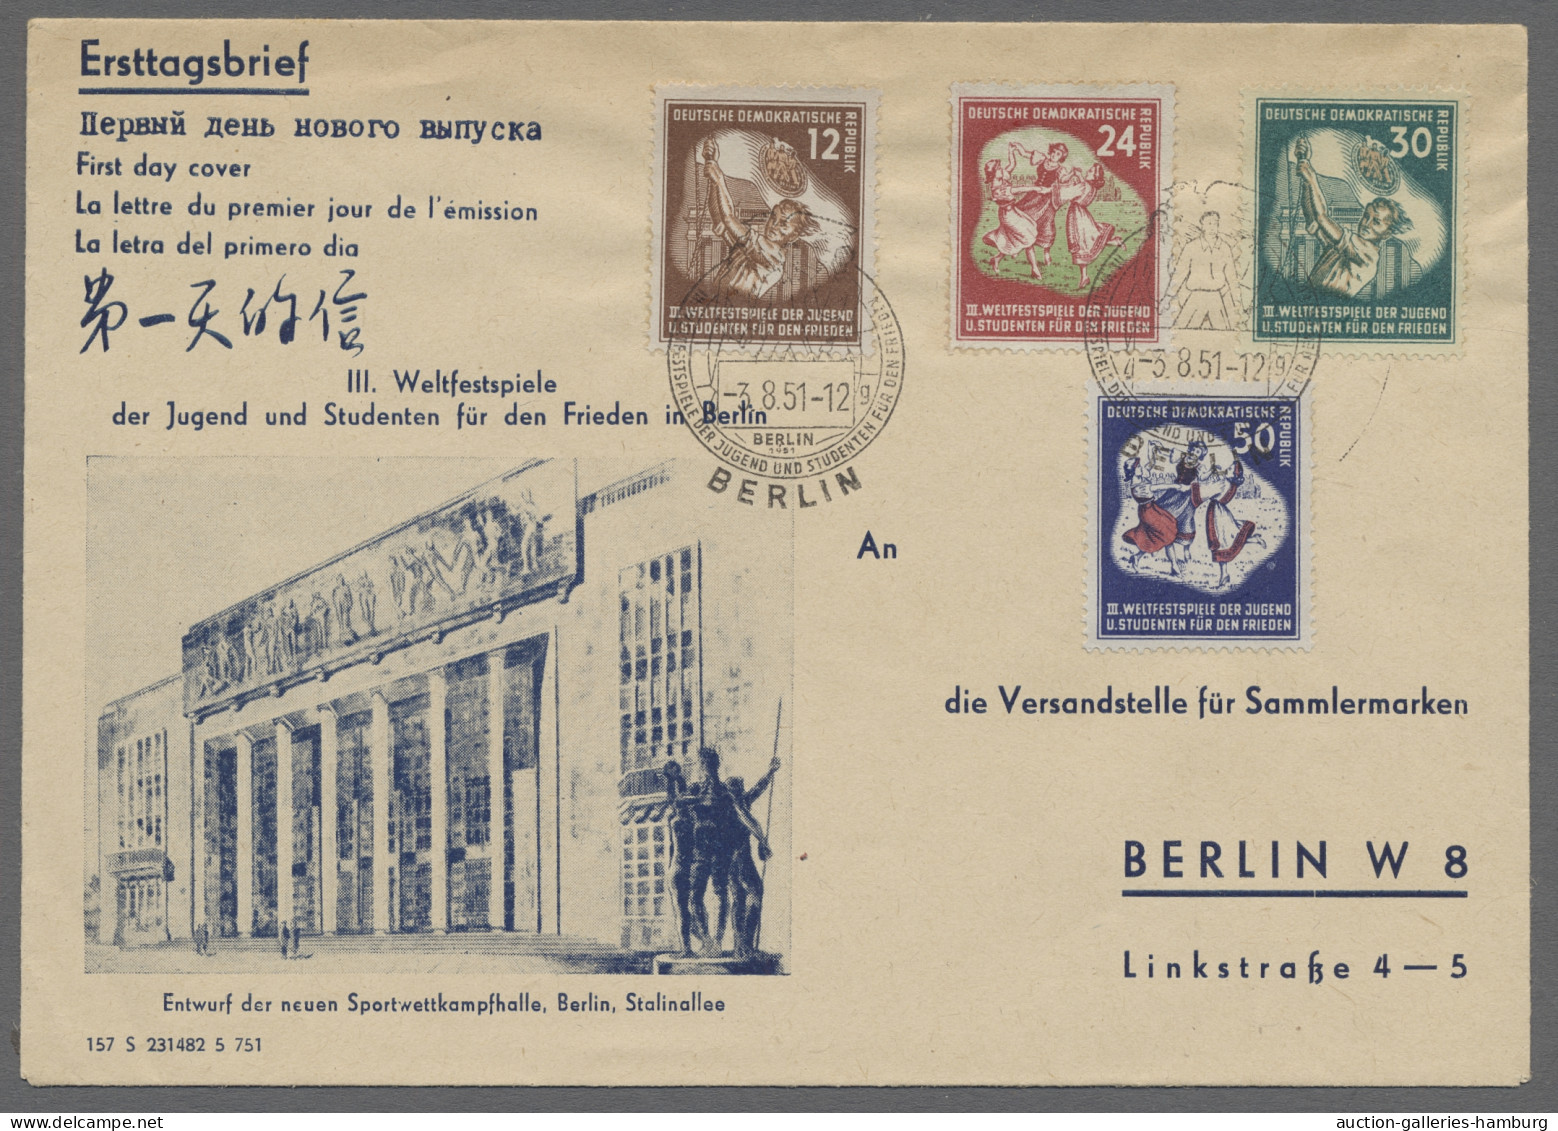 Brf./AK/GA Deutschland: 1899-1962, Partie von etwa 100 Belegen mit u.a. Deutschem Reich, Ko